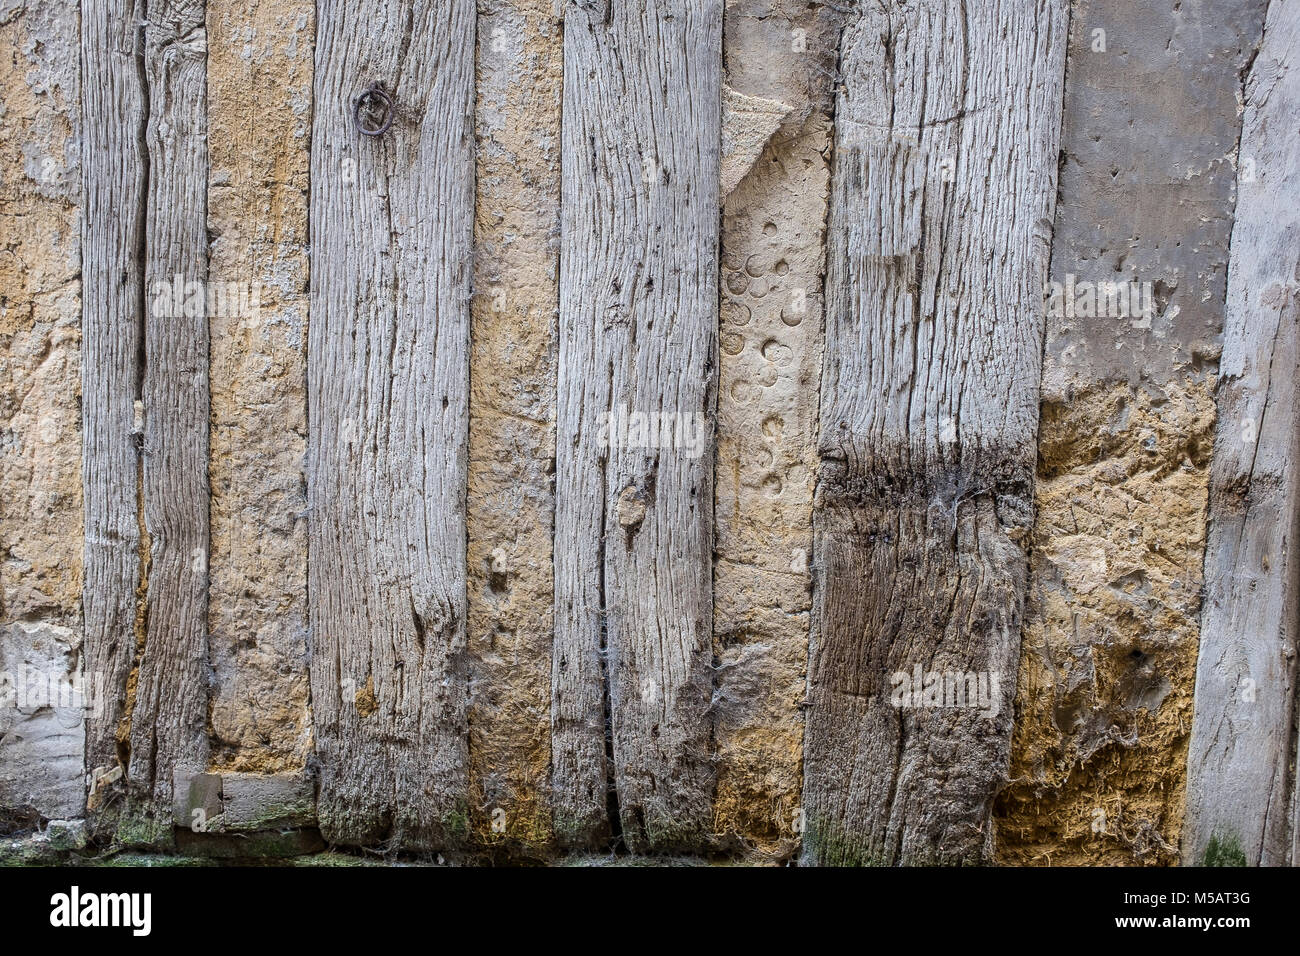 Dettaglio di una vecchia casa in legno e muratura con pareti sporche e legno stagionato,danneggiato , danneggiato in corrispondenza del fondo della parete, con muschio verde,abstact foto Francia Normandia. Foto Stock